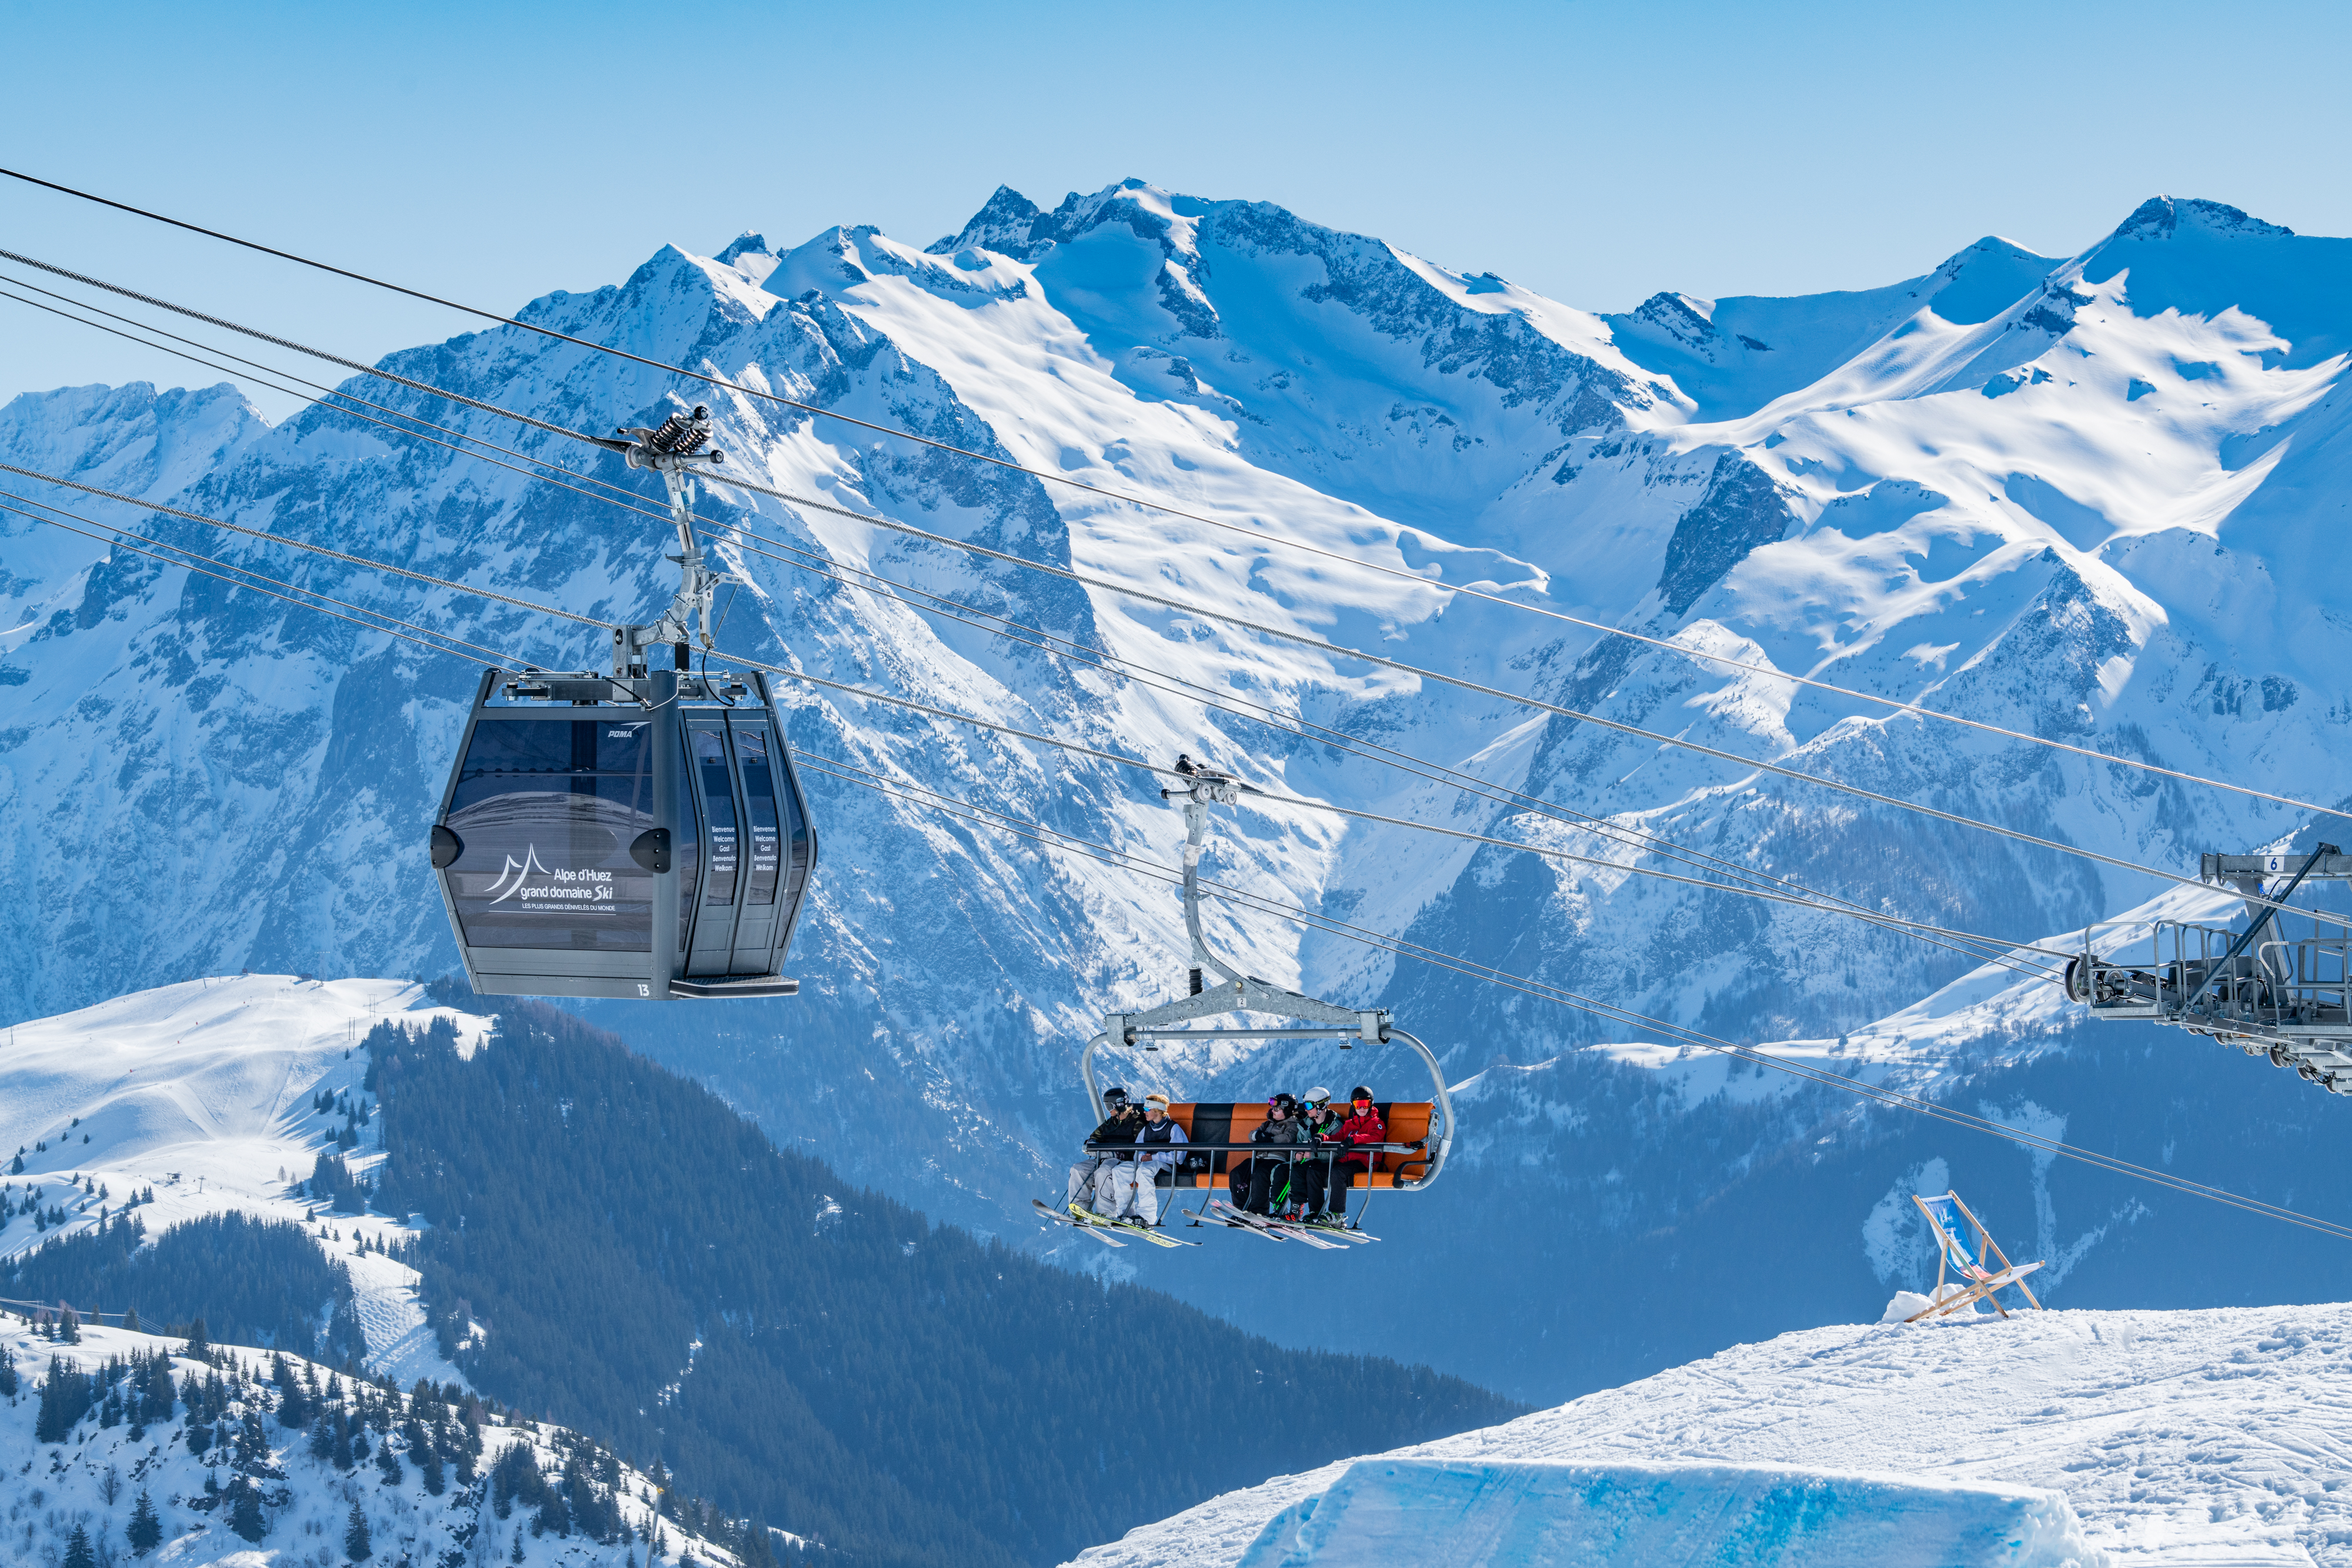 Stations des Alpes. Alpe d'Huez